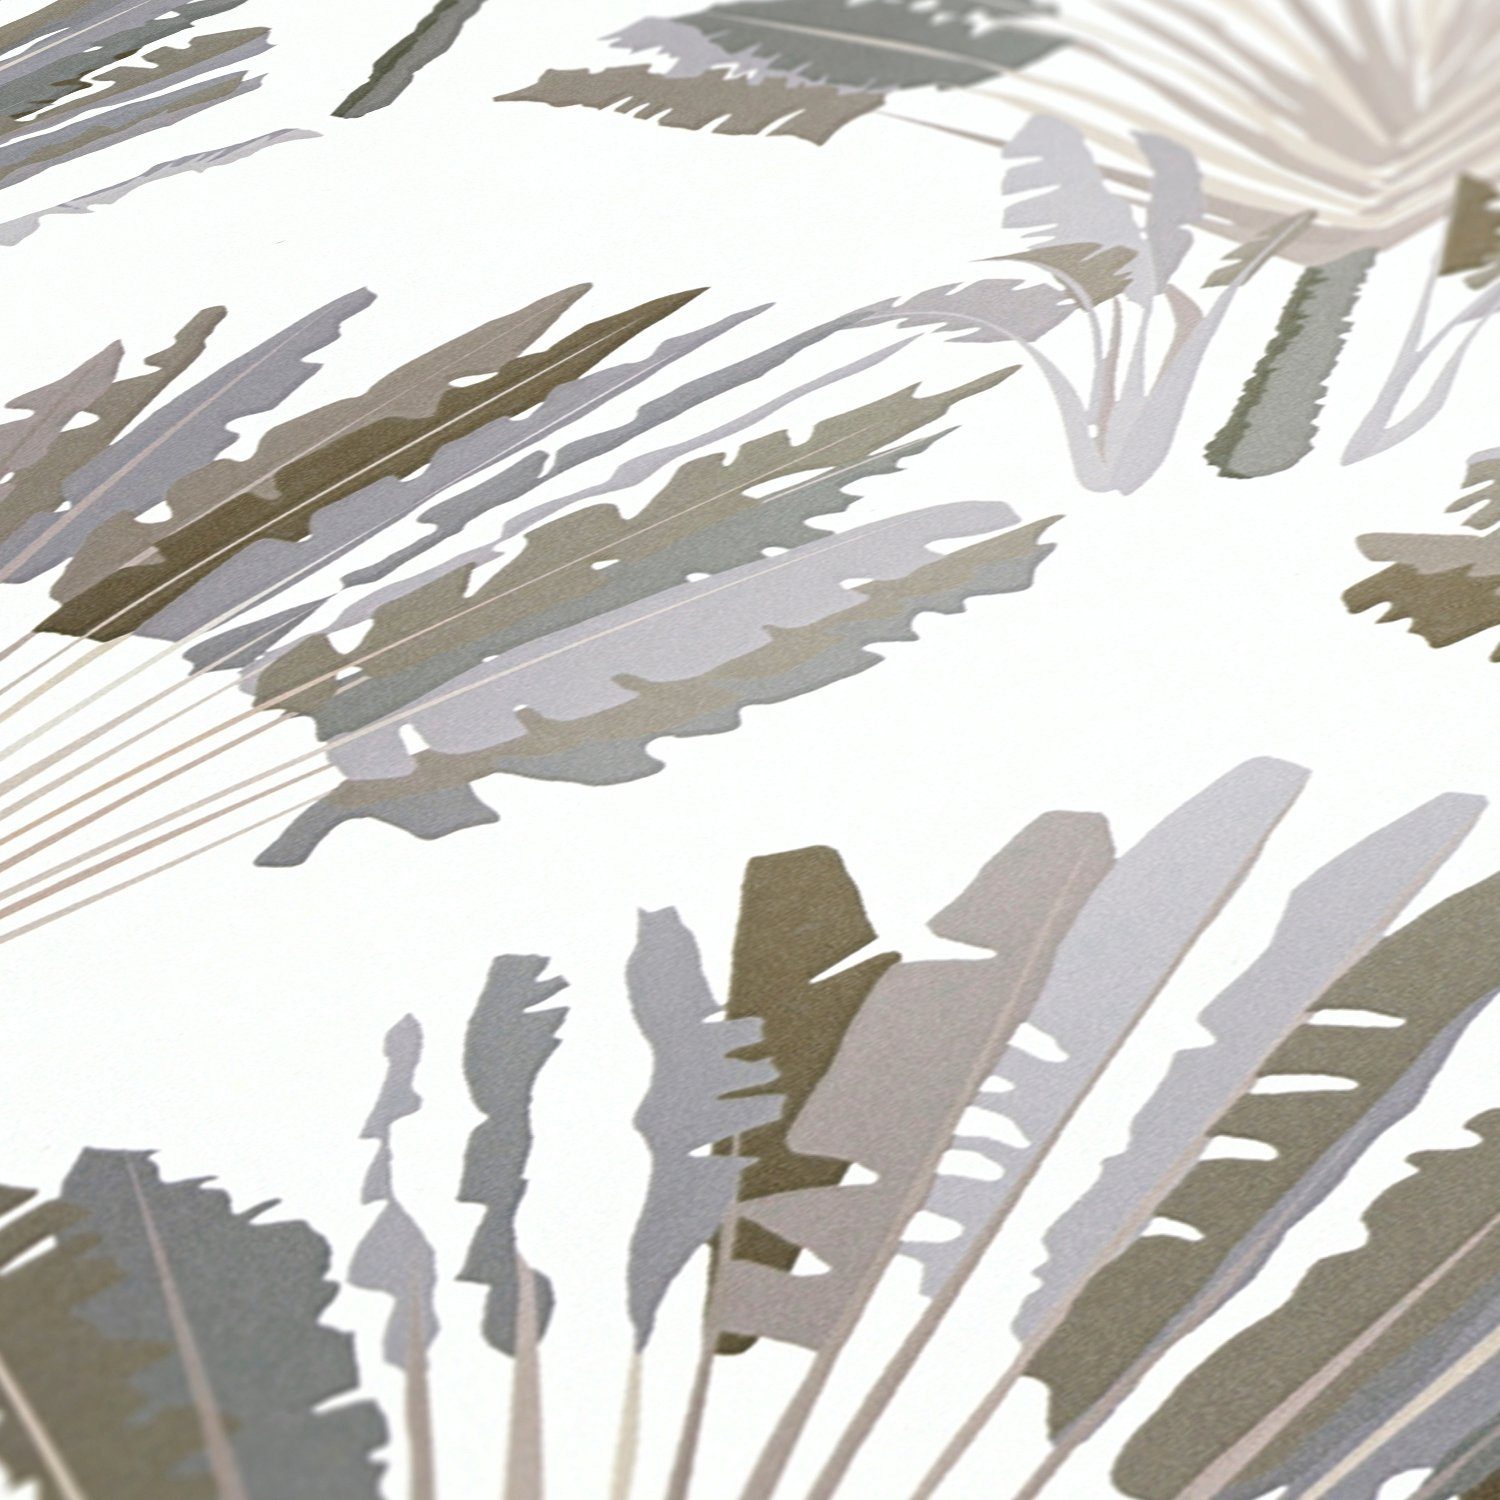 Jungle Chic, botanisch, Paper Dschungel glatt, Federn floral, Architects Tapete grau/weiß/braun Palmentapete tropisch, Vliestapete